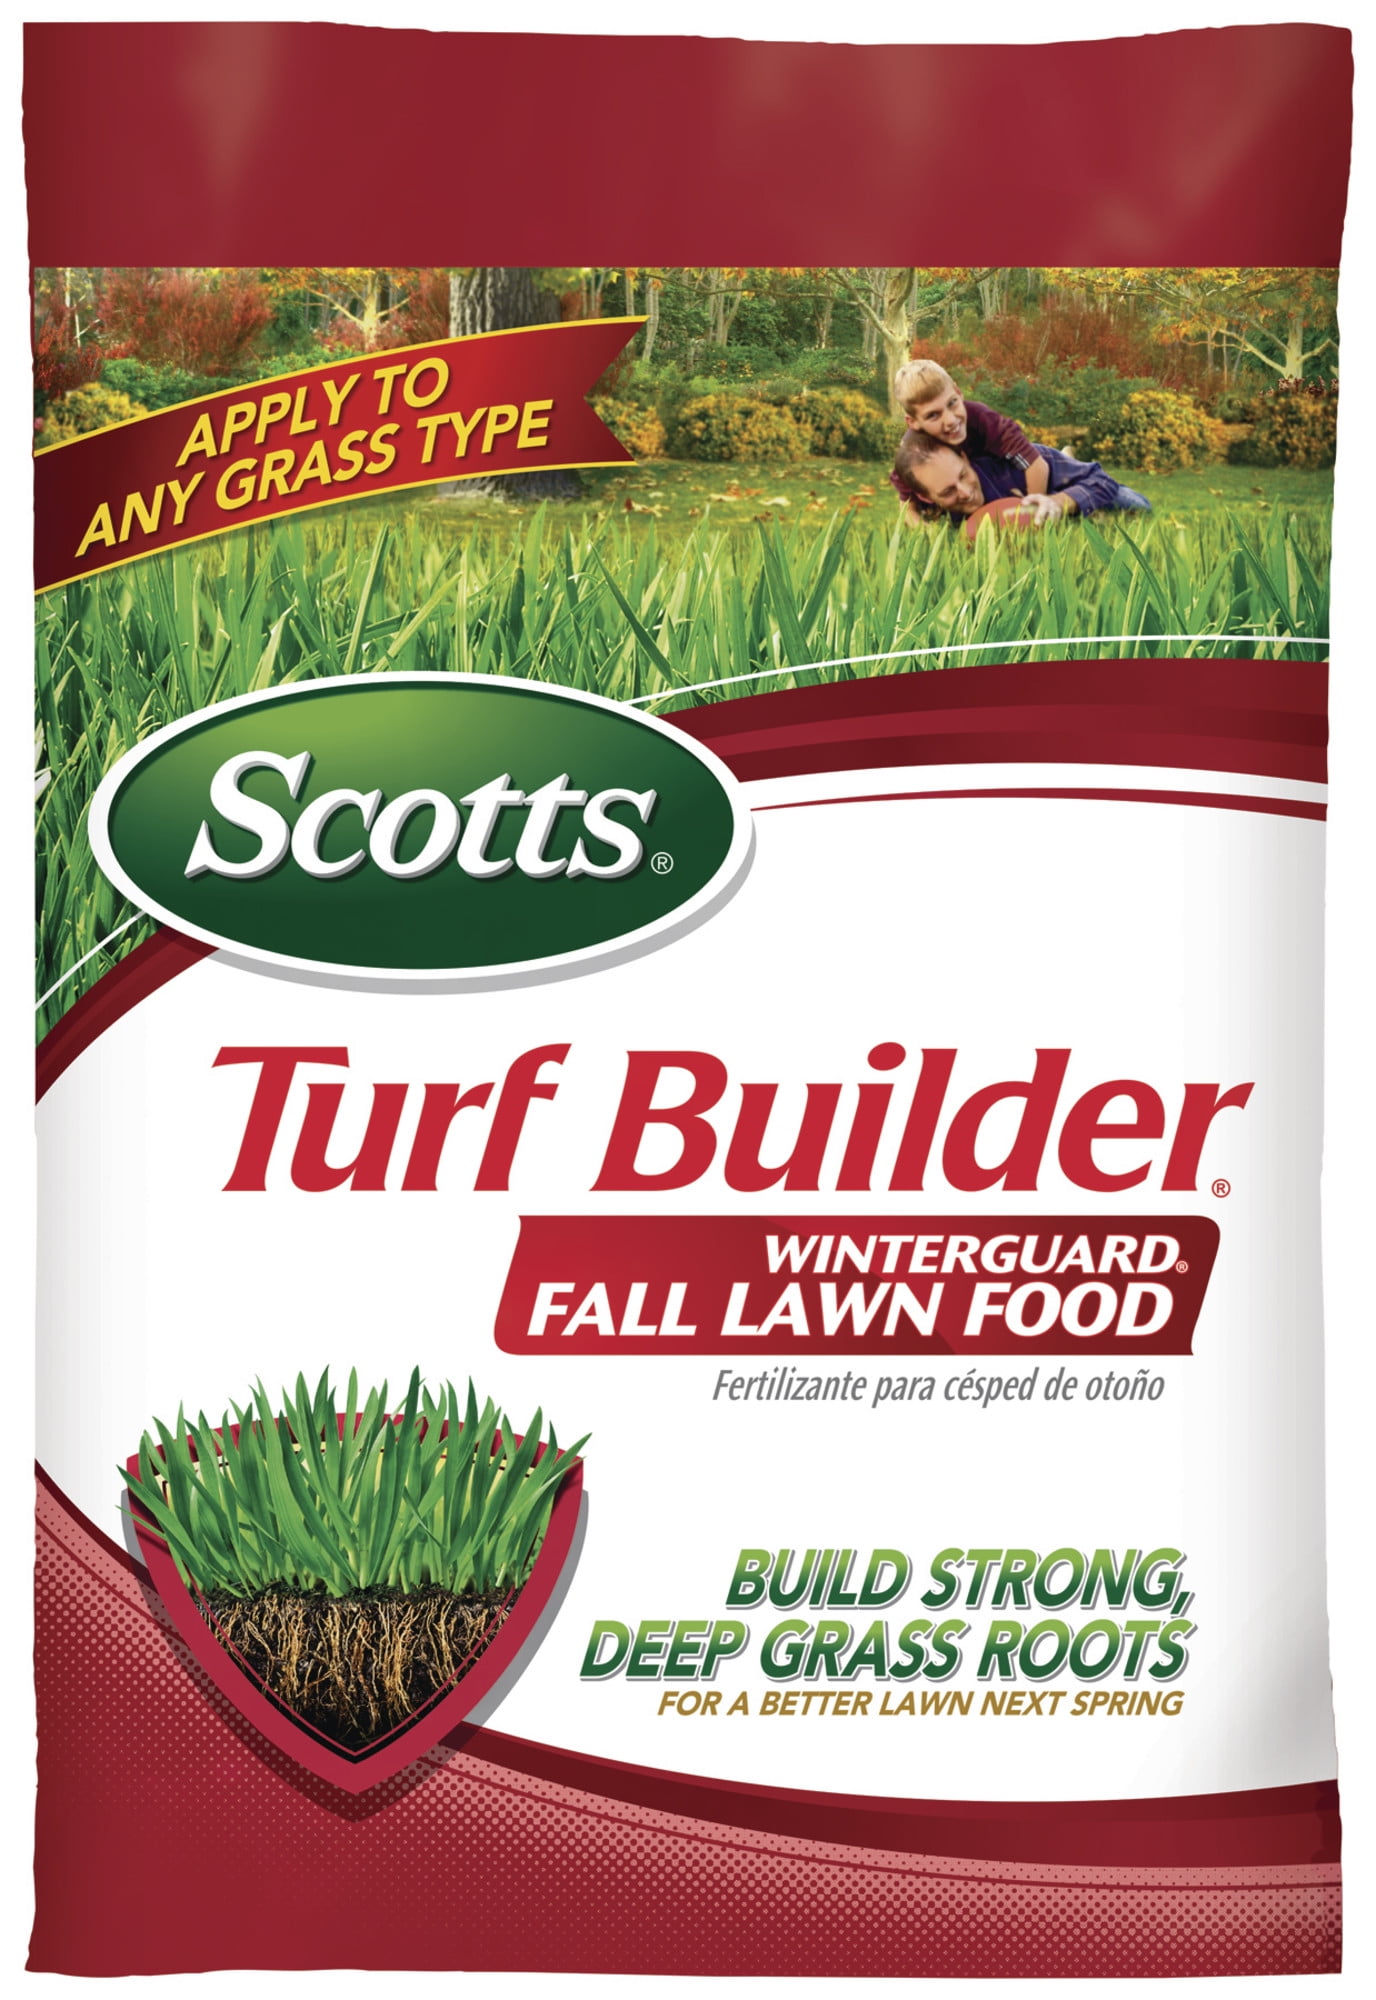 Scotts Turf Builder Winterguard Fall Lawn Food, 12.5 lbs - Walmart.com